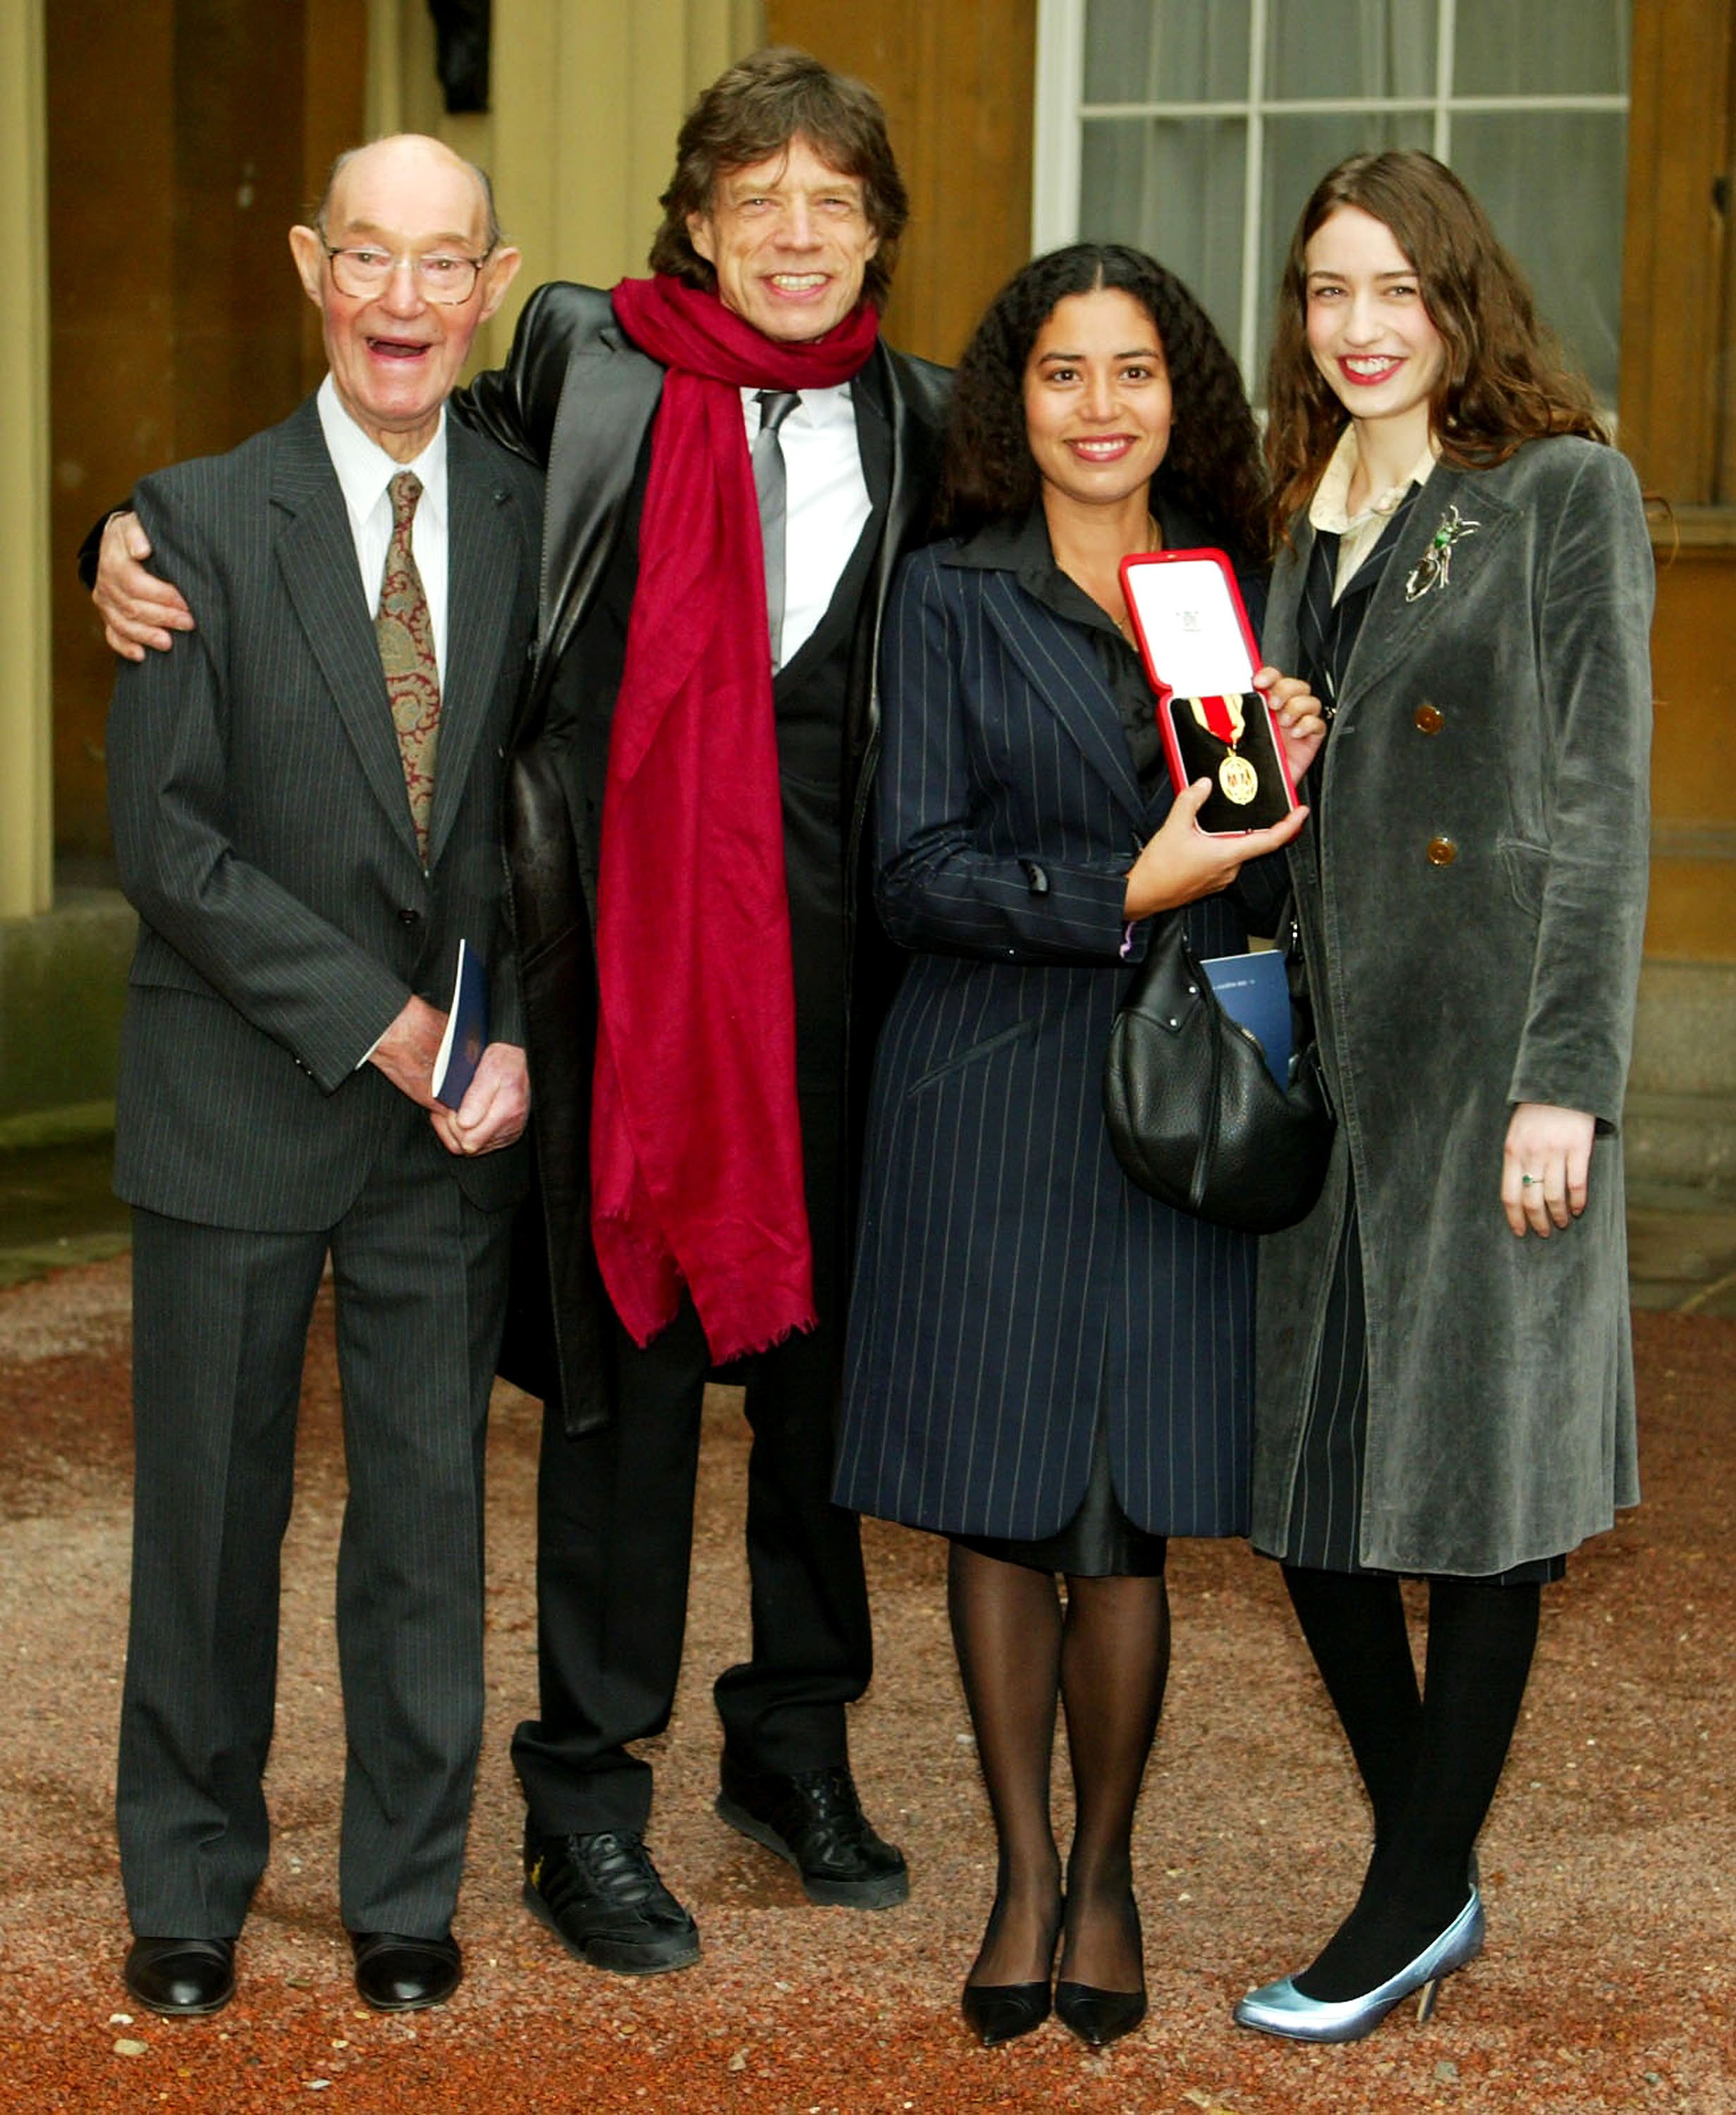 El padre Joe con Mick Jagger y sus hijas Karis y Elizabeth en el Palacio de Buckingham, el 12 de diciembre de 2003 en Londres. | Foto: Getty Images